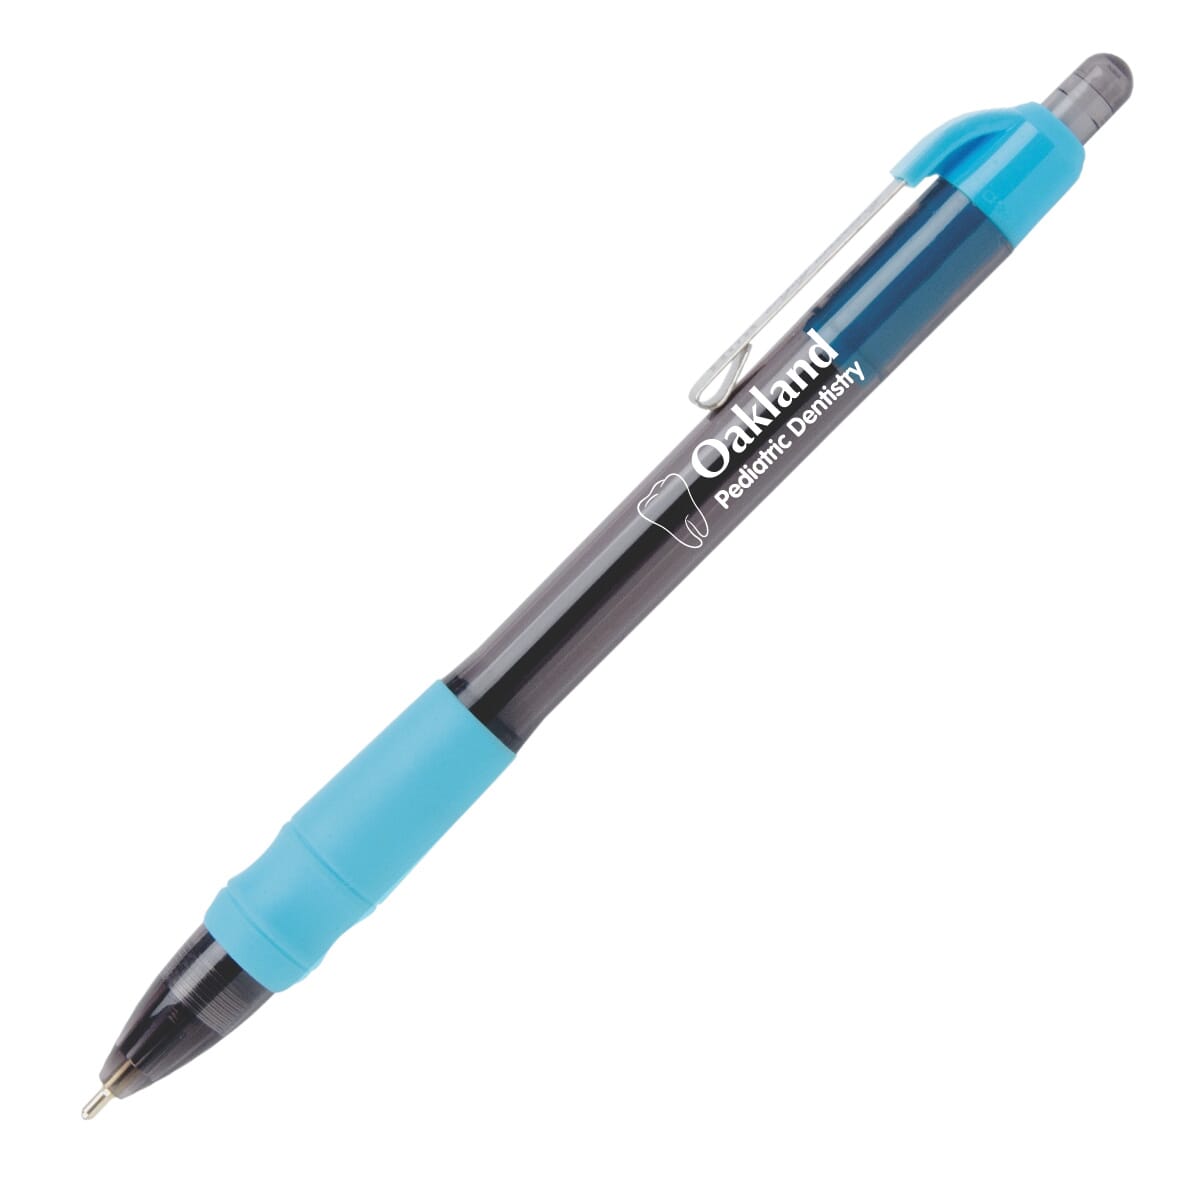 Maxglide pen in bright colors